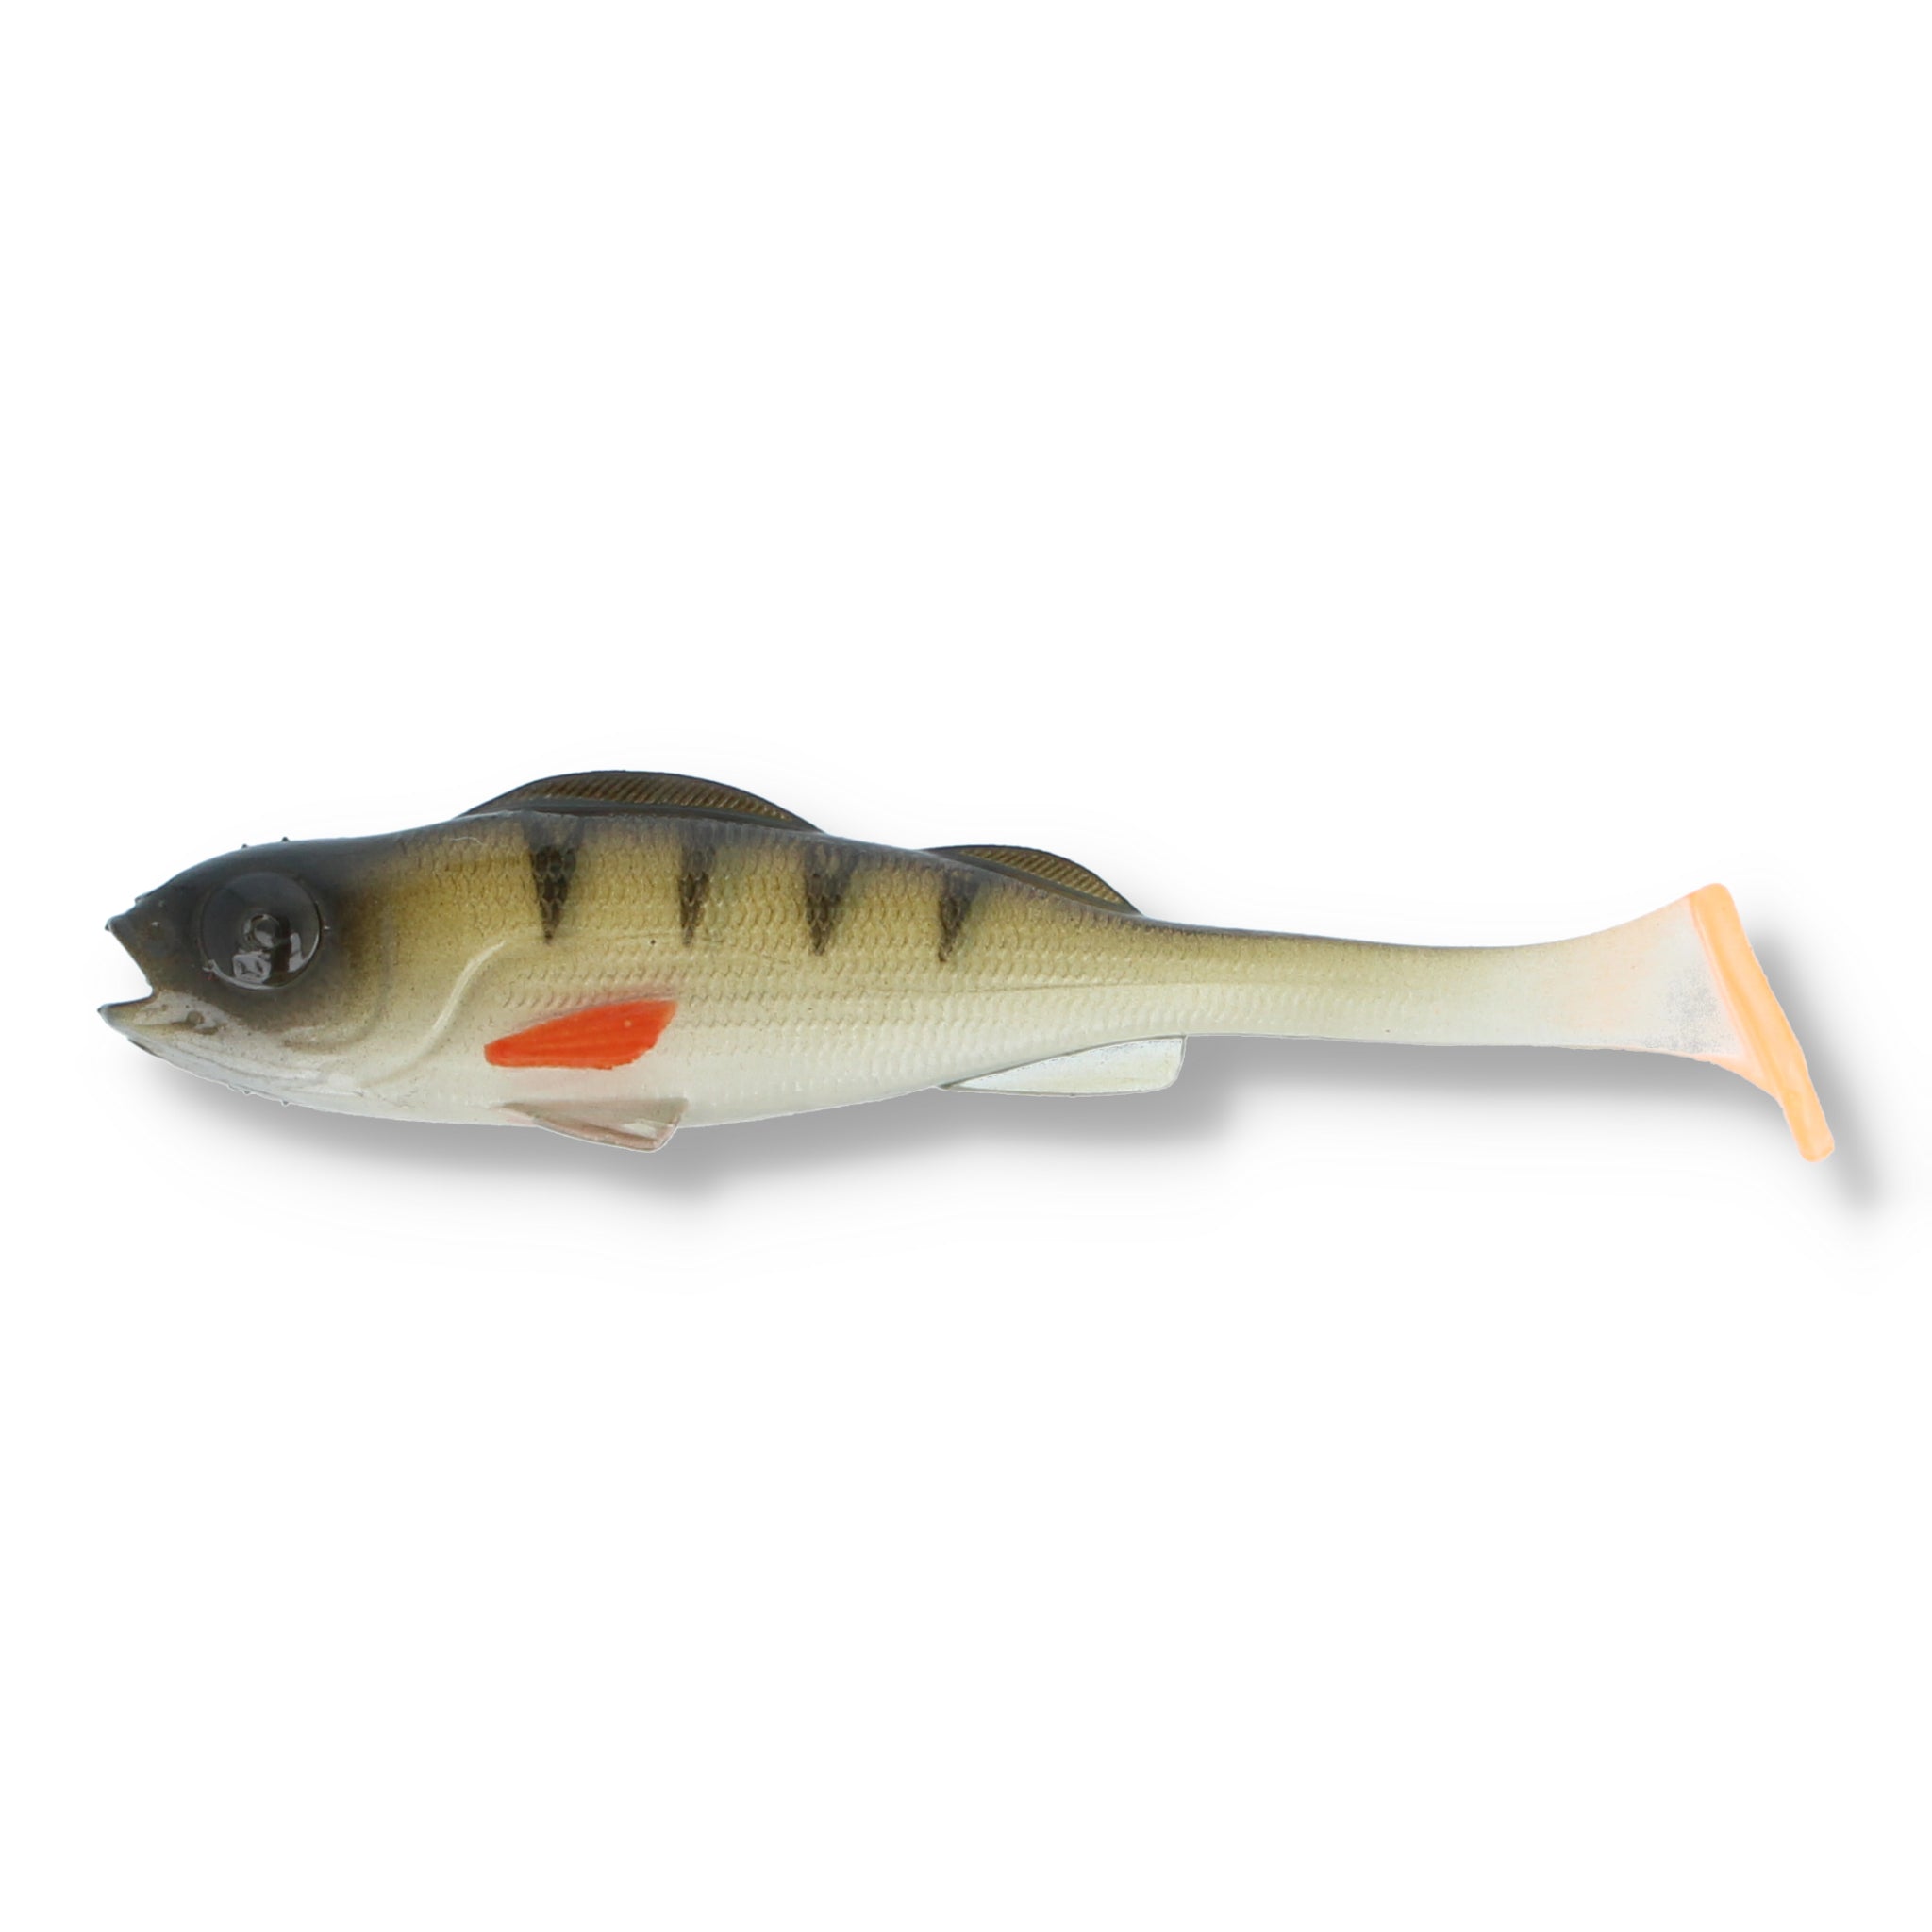 Mikado Real Fish Perch 3,7"